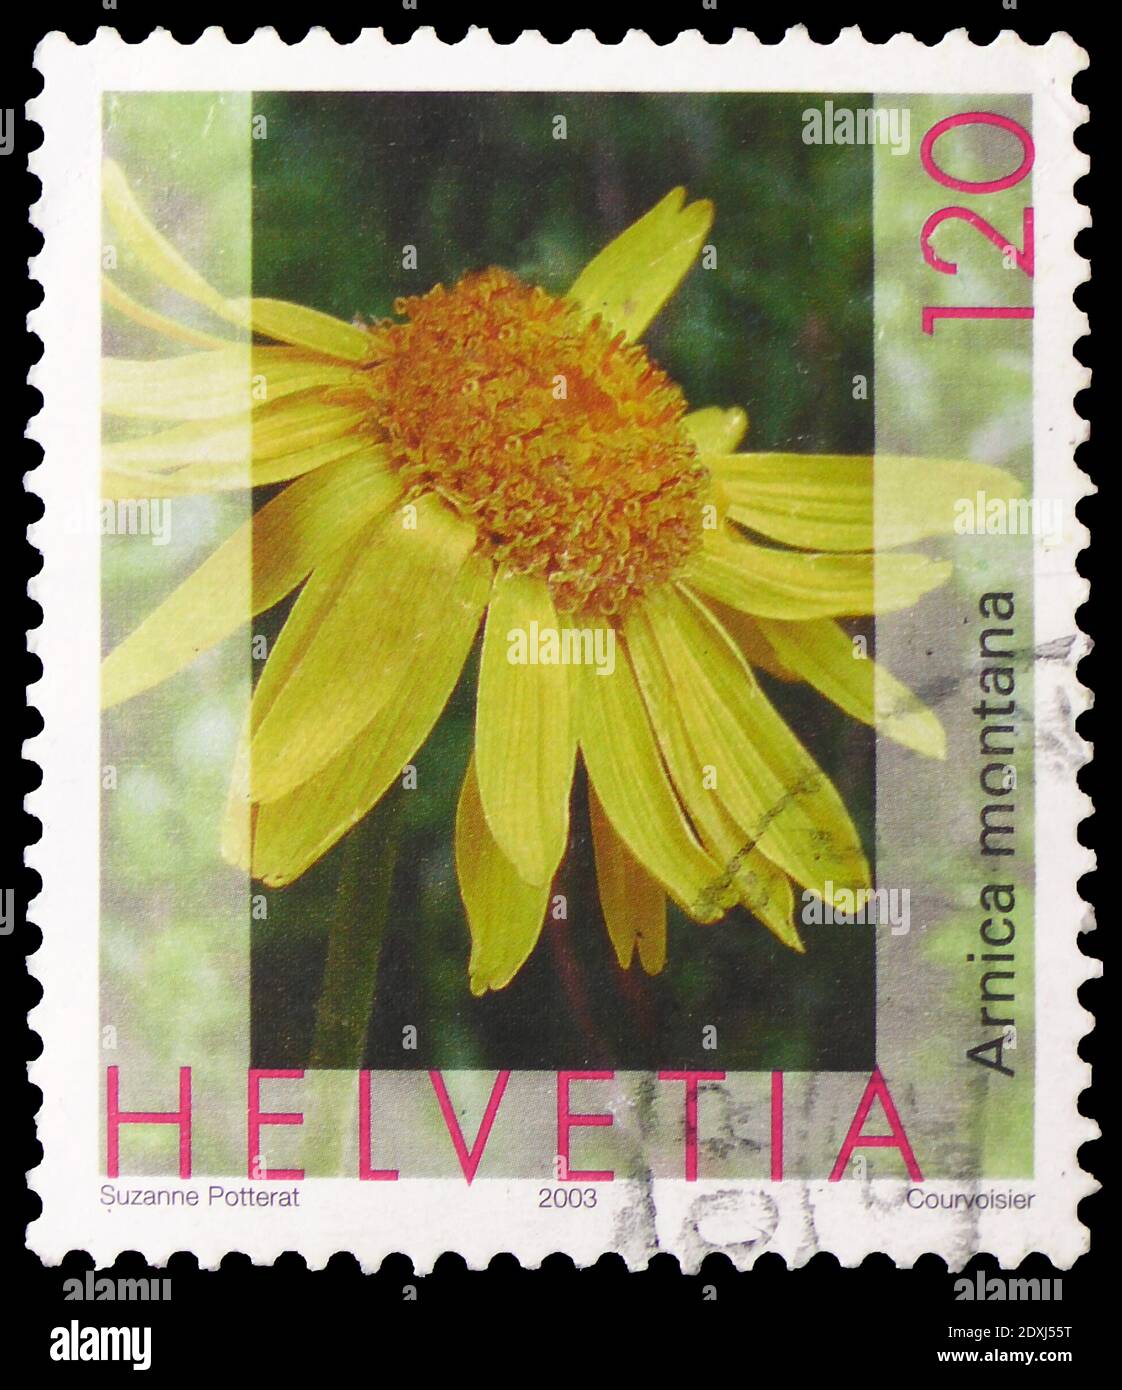 MOSKAU, RUSSLAND - 23. MÄRZ 2019: In der Schweiz gedruckte Briefmarke zeigt  Arnica, Leopard's Bane (Arnica montana), Flora Serie, um 2003  Stockfotografie - Alamy